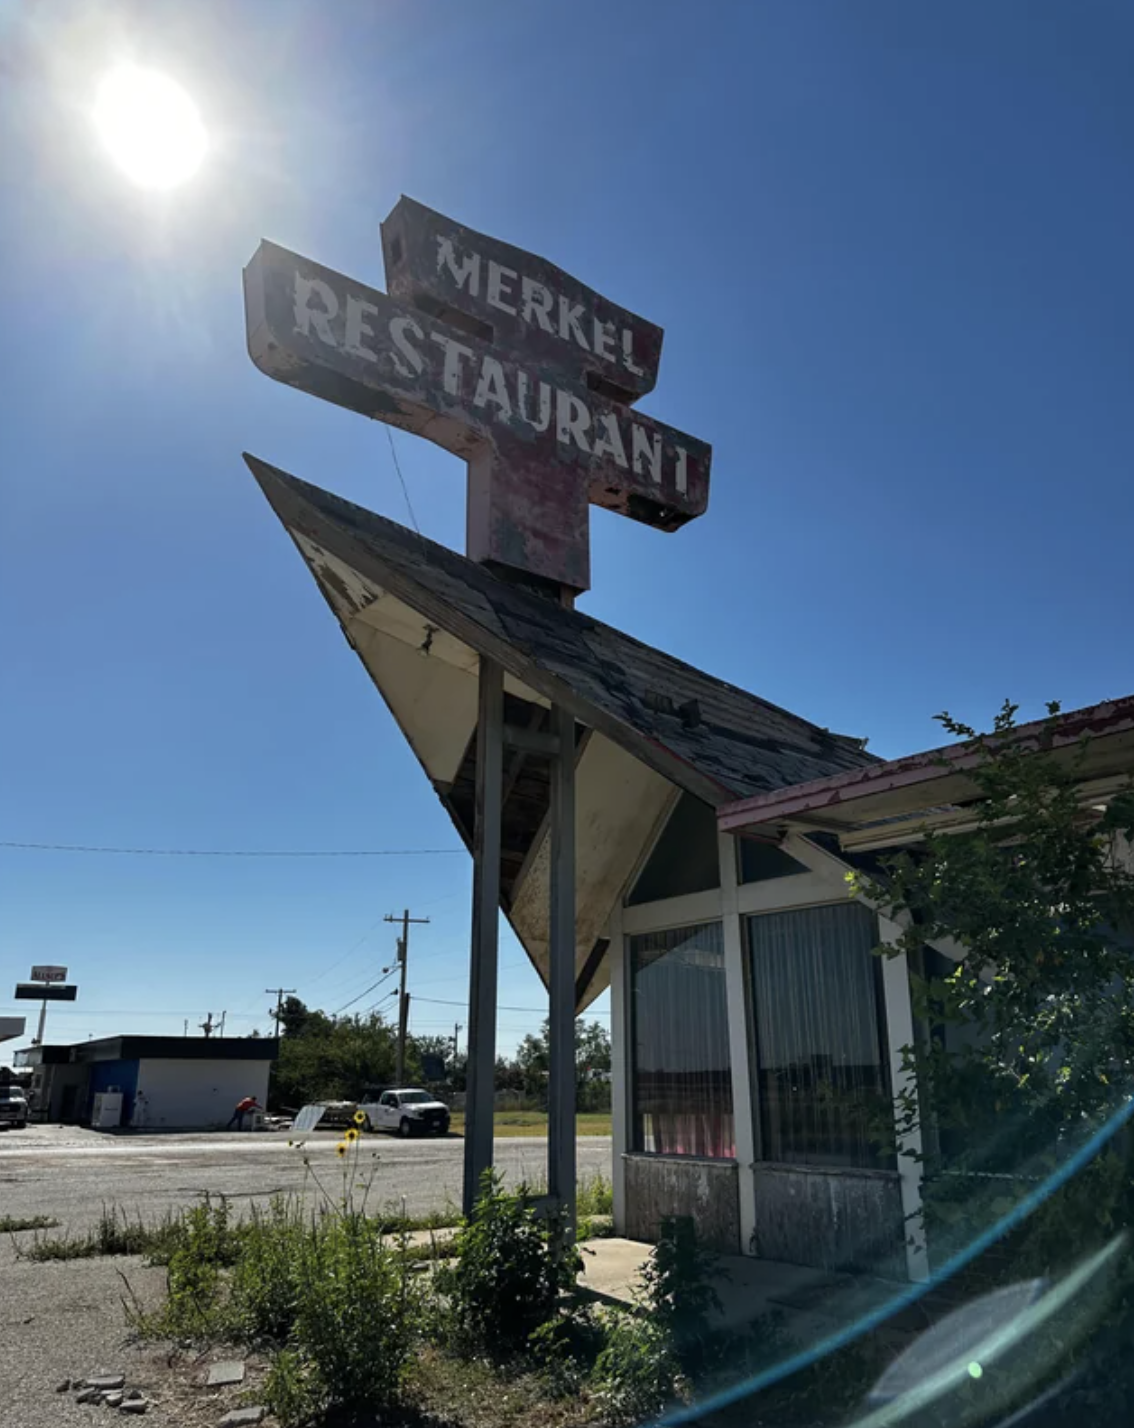 An abandoned restaurant